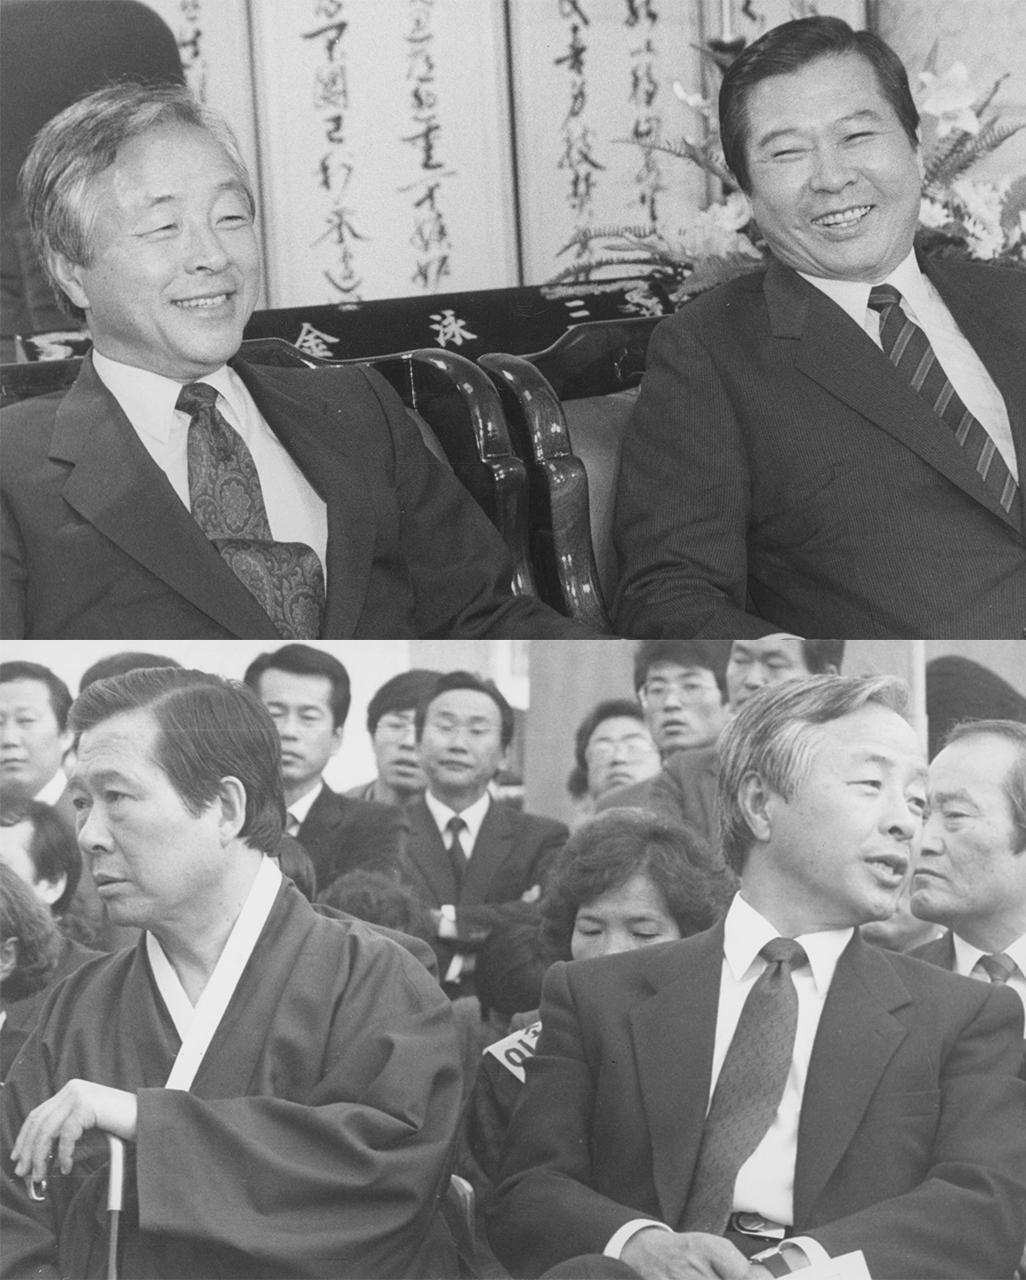 (위)김영삼과 김대중은 9월 1일 서로 웃으면서 대통령 후보 단일화 협의를 했으나 실패했다. (아래)단일화 협상이 결렬된 후 처음 만난 10월 25일 고려대 집회 자리에서는 냉랭한 사이가 되고 말았다.